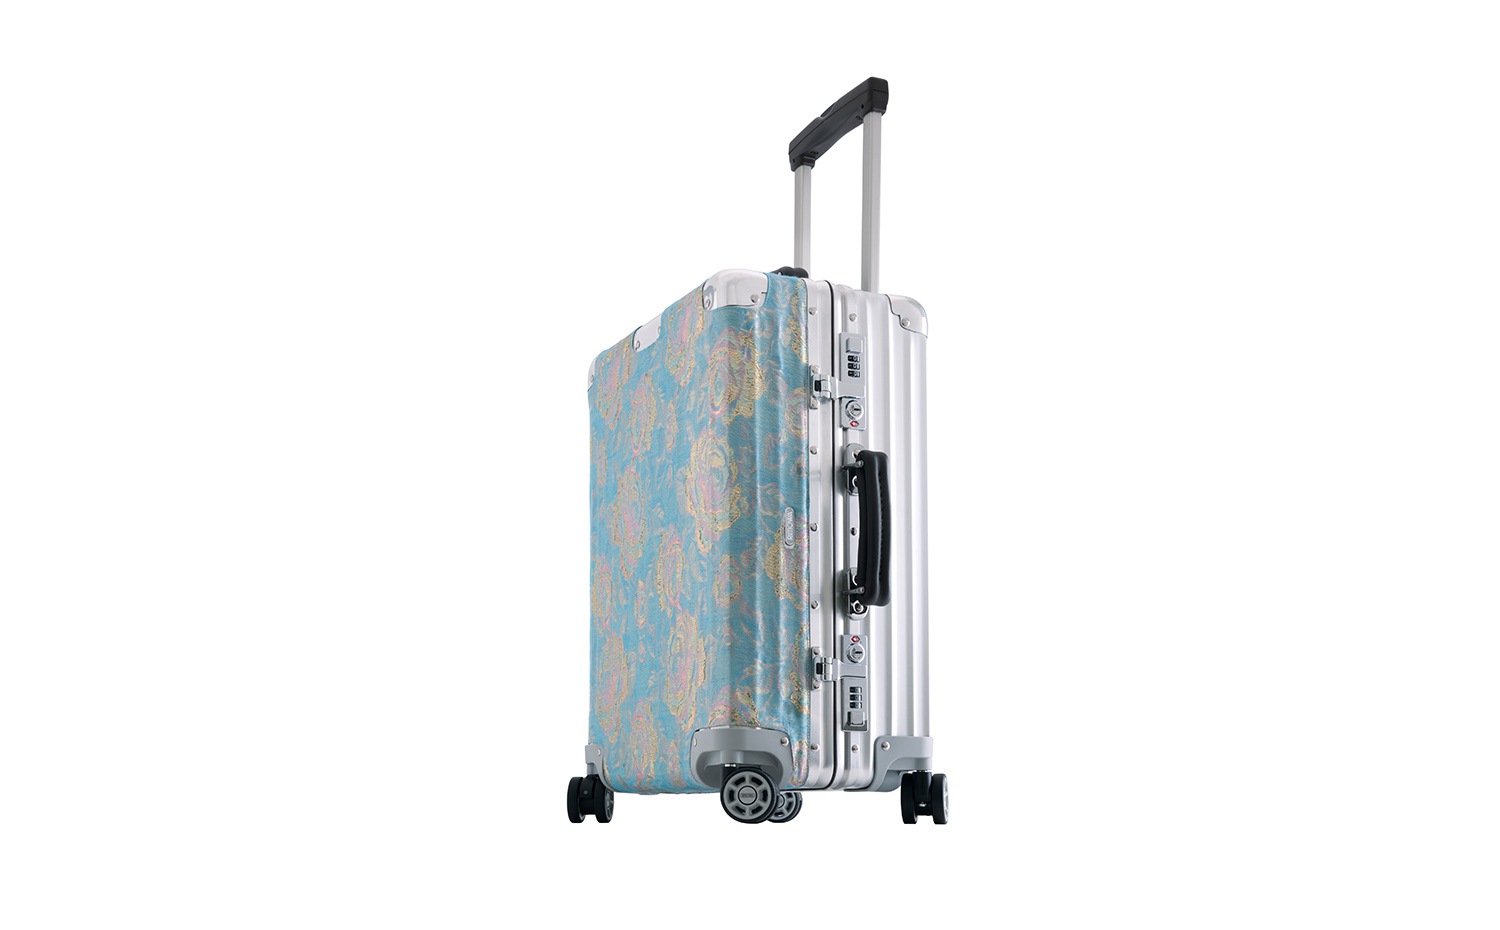 RIMOWA x Ong Shunmugam Capsule 系列行李箱配印度特色花紋